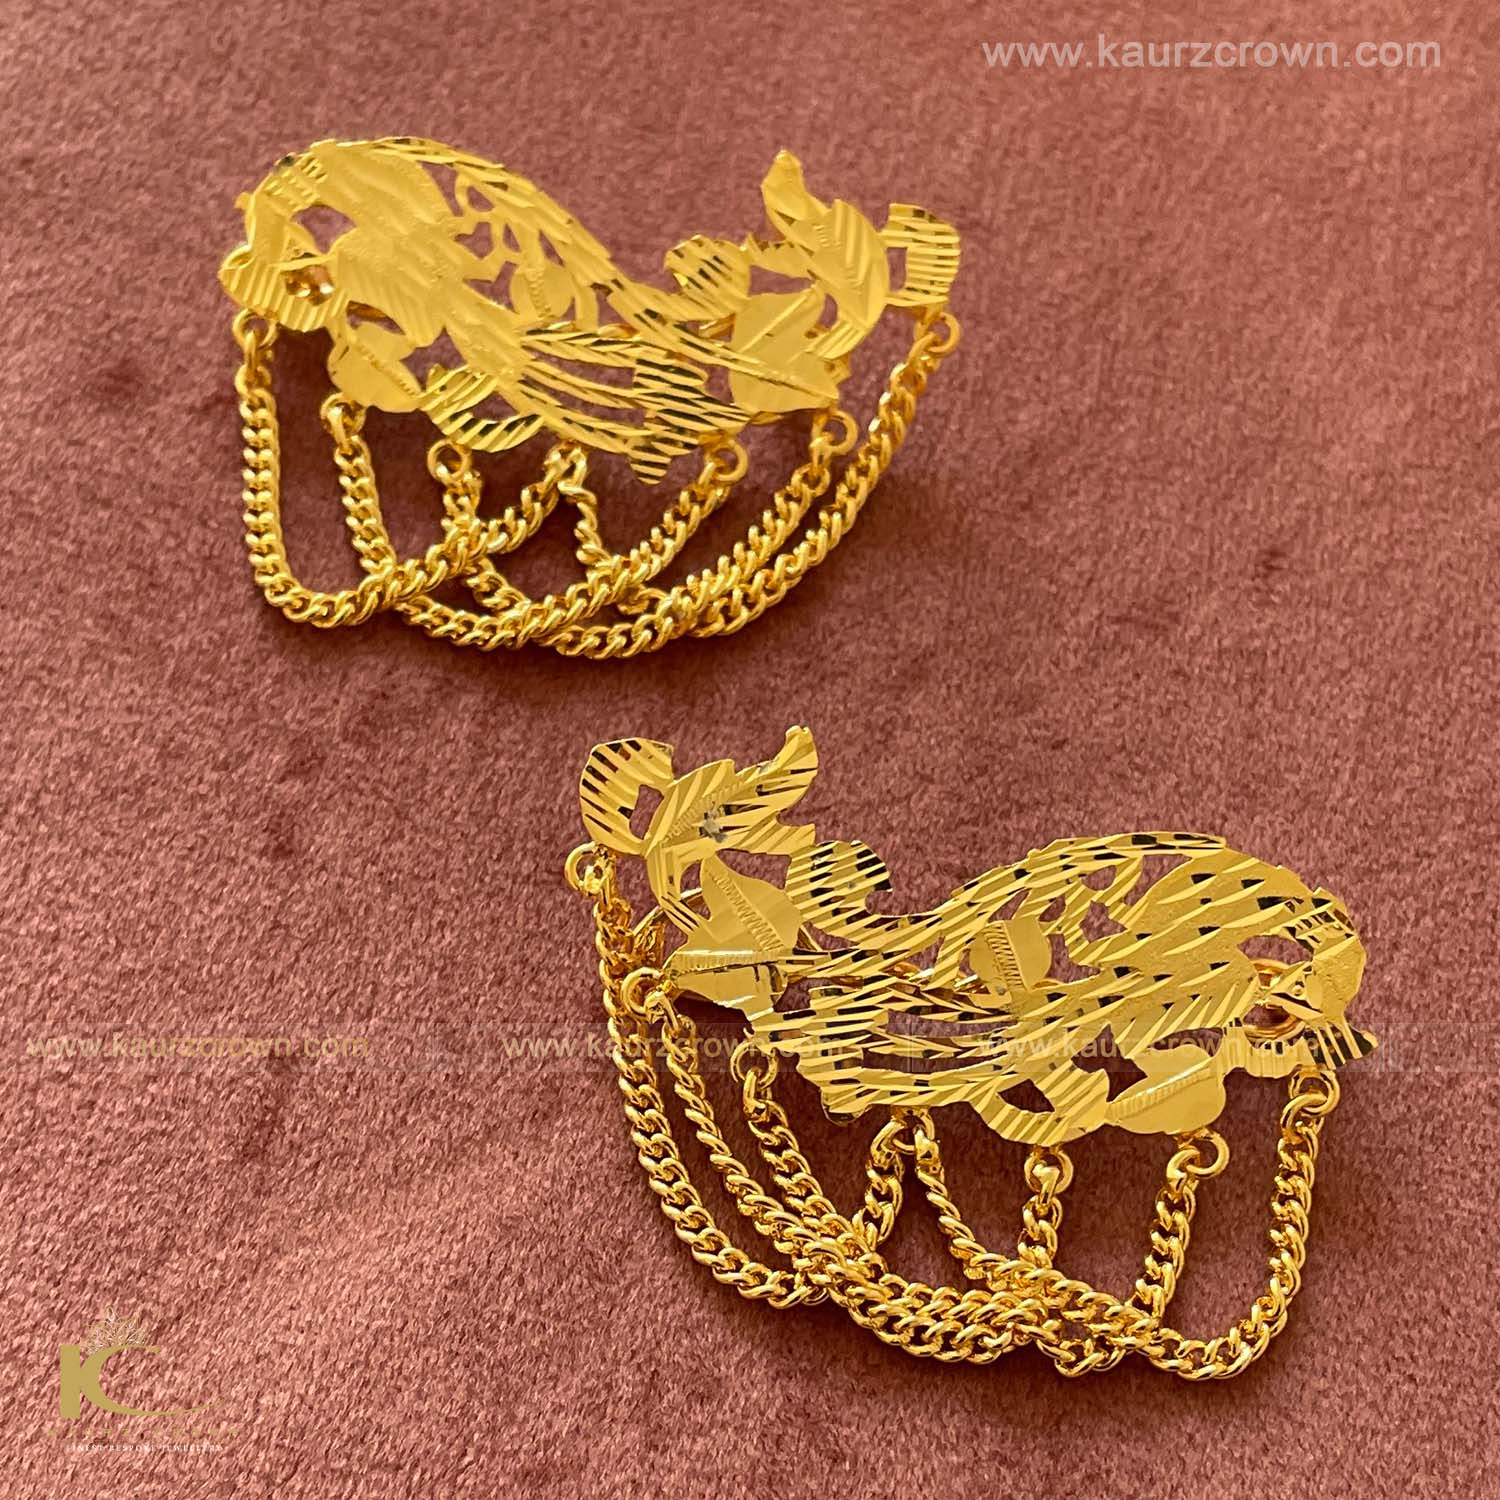 Nakhro Riwayati Gold Plated Hair Pins , Nakhro , Riwayati , gold plated , hair pins , kaurz crown , punjabi jewellery